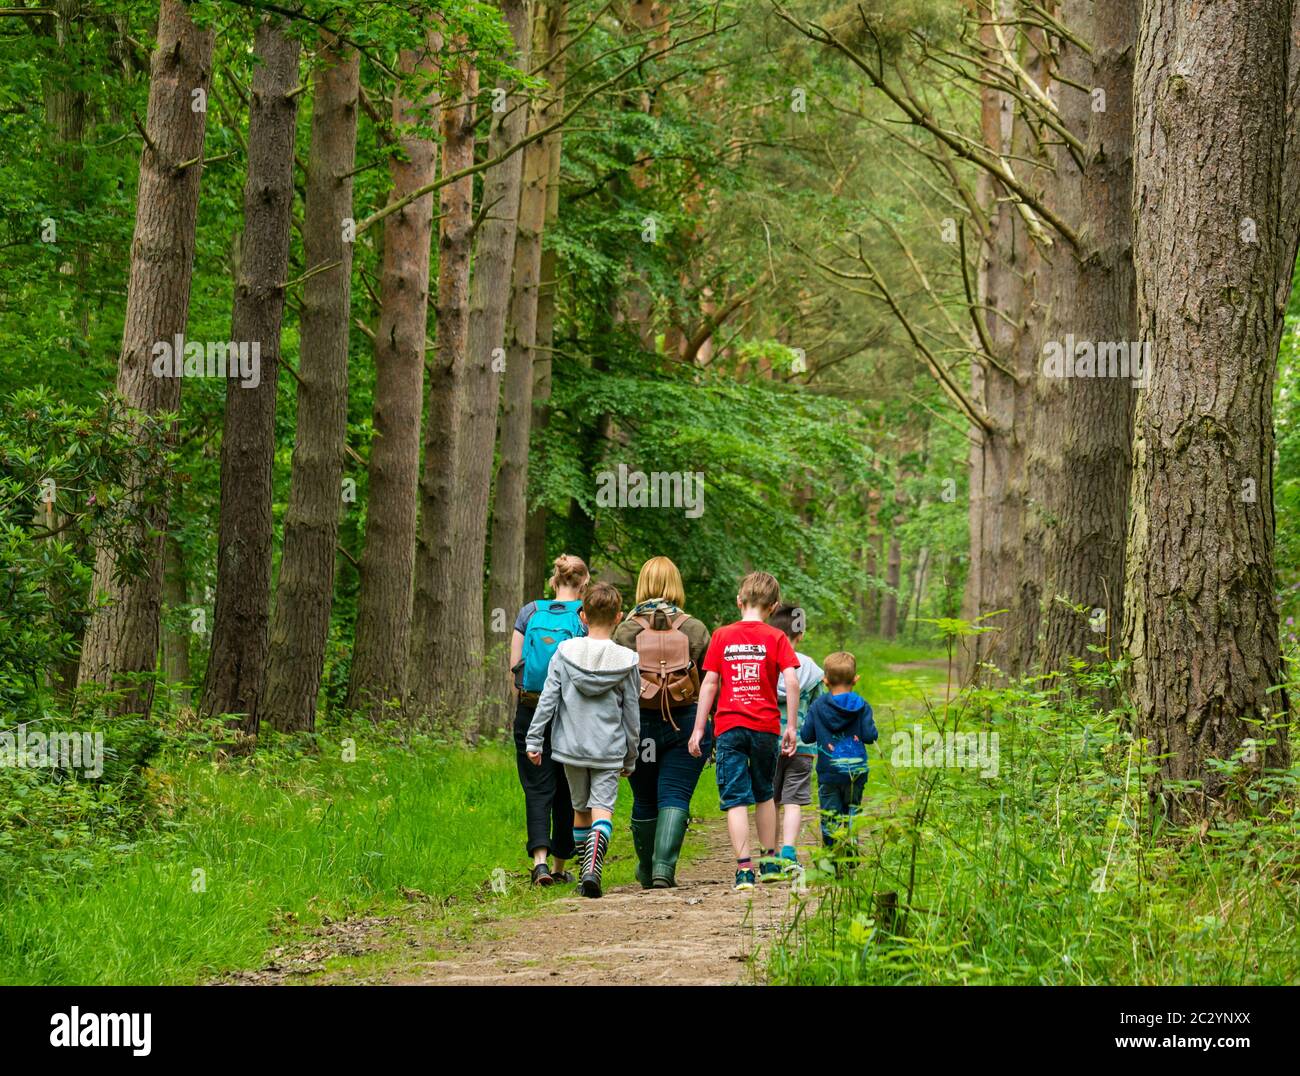 Mères et enfants marchant sur un sentier forestier dans une forêt avec des pins, Binning Wood, East Lothian, Écosse, Royaume-Uni Banque D'Images